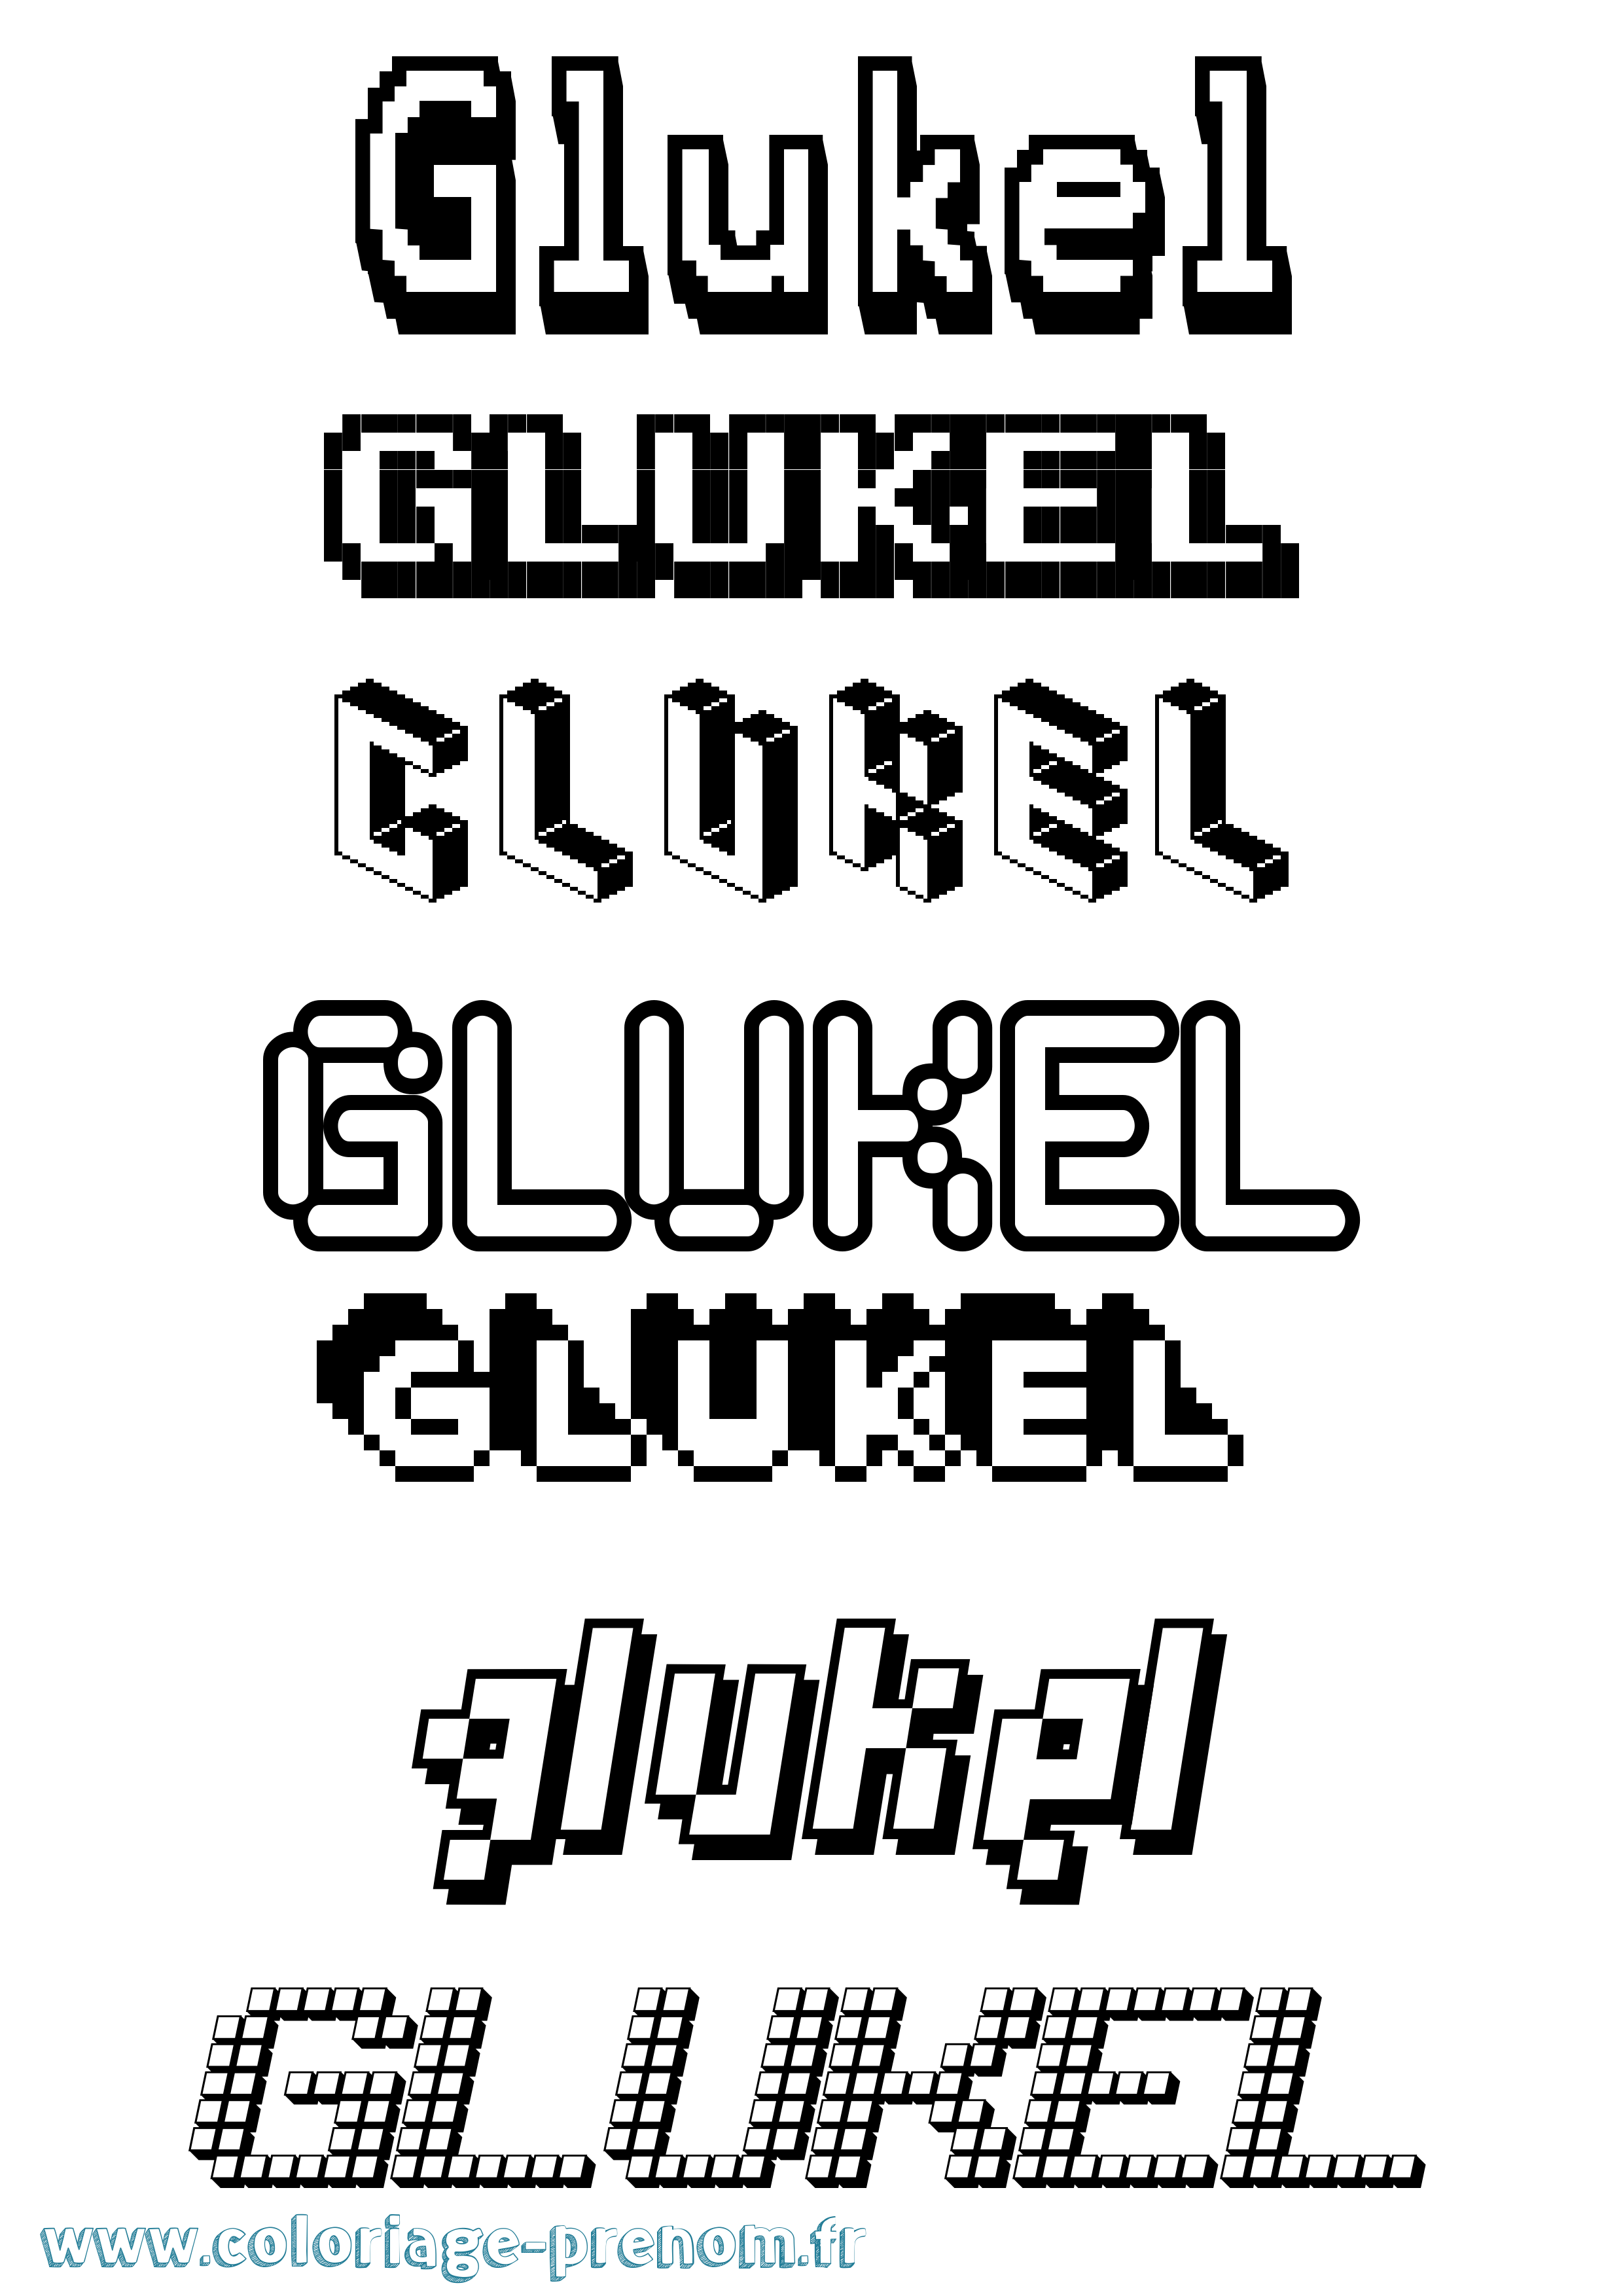 Coloriage prénom Glukel Pixel